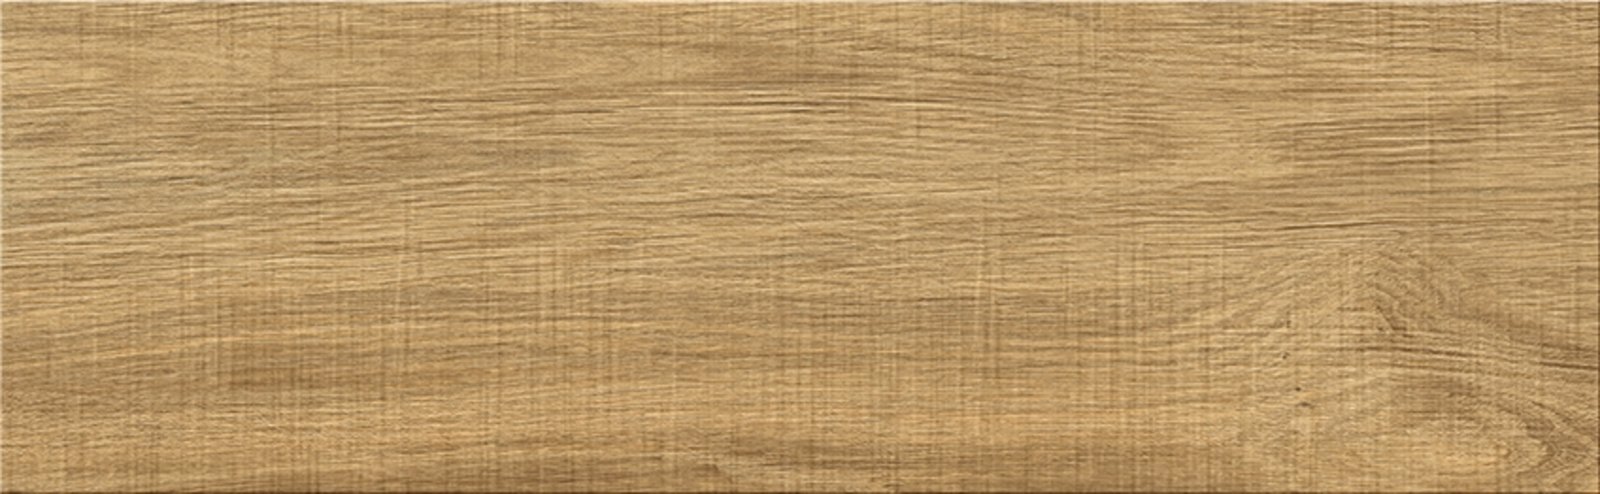 Dlažba War Wood Beige 18,5x59,8 cm